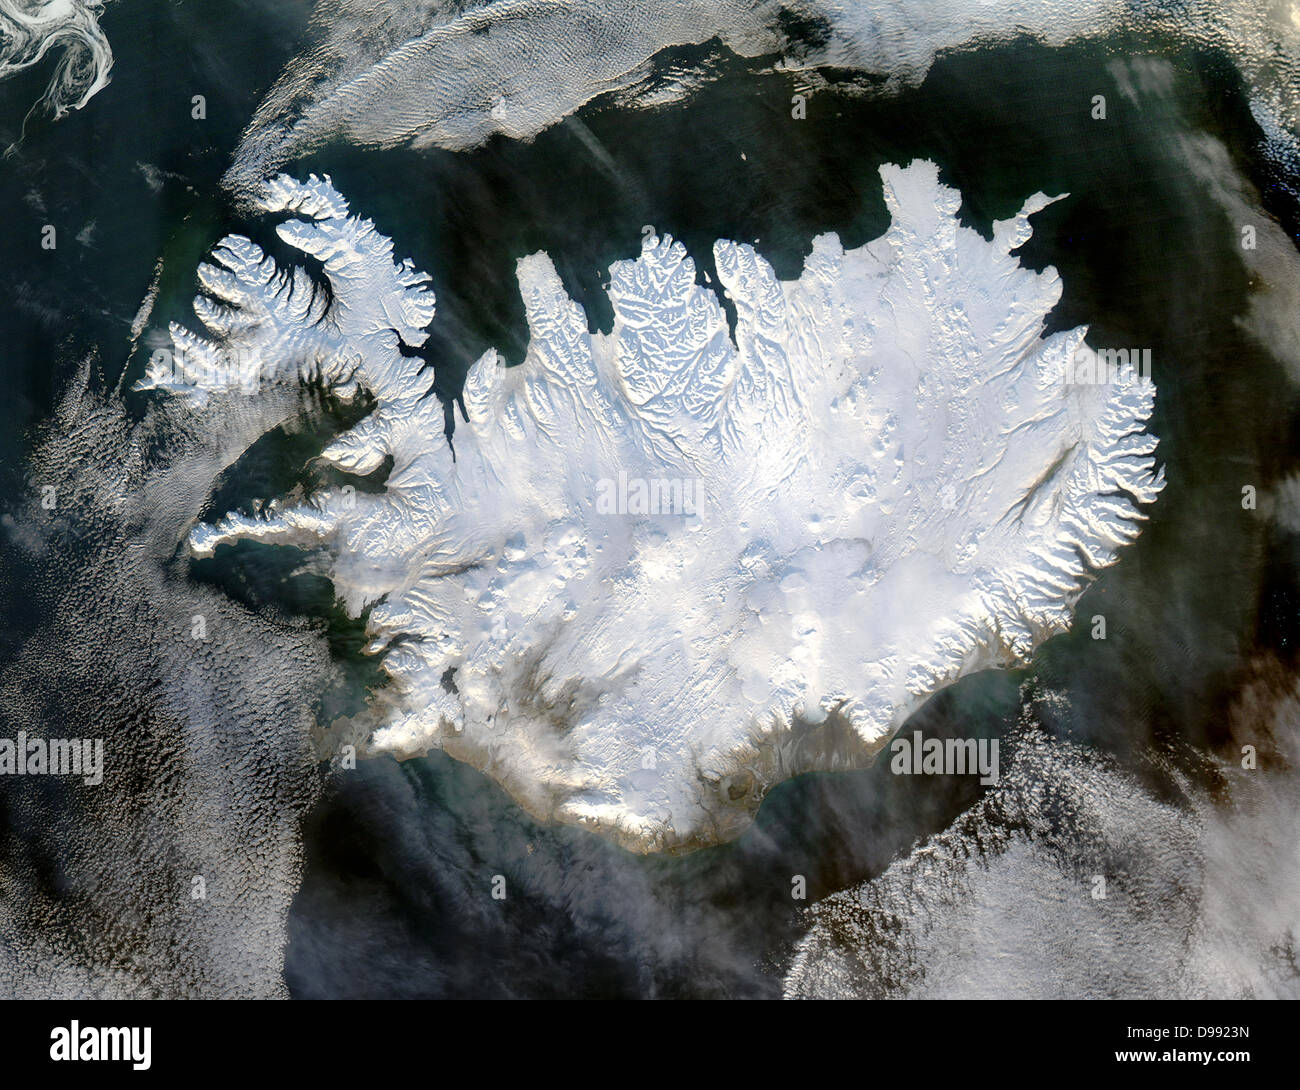 Immagine satellitare di Islanda del 28 gennaio 2004 che mostra è ricoperto da una coltre di neve e ghiaccio che sta oscurando i ghiacciai permanenti e calotte glaciali che esistono per tutto l'anno. Il credito della NASA. La scienza inverno Foto Stock